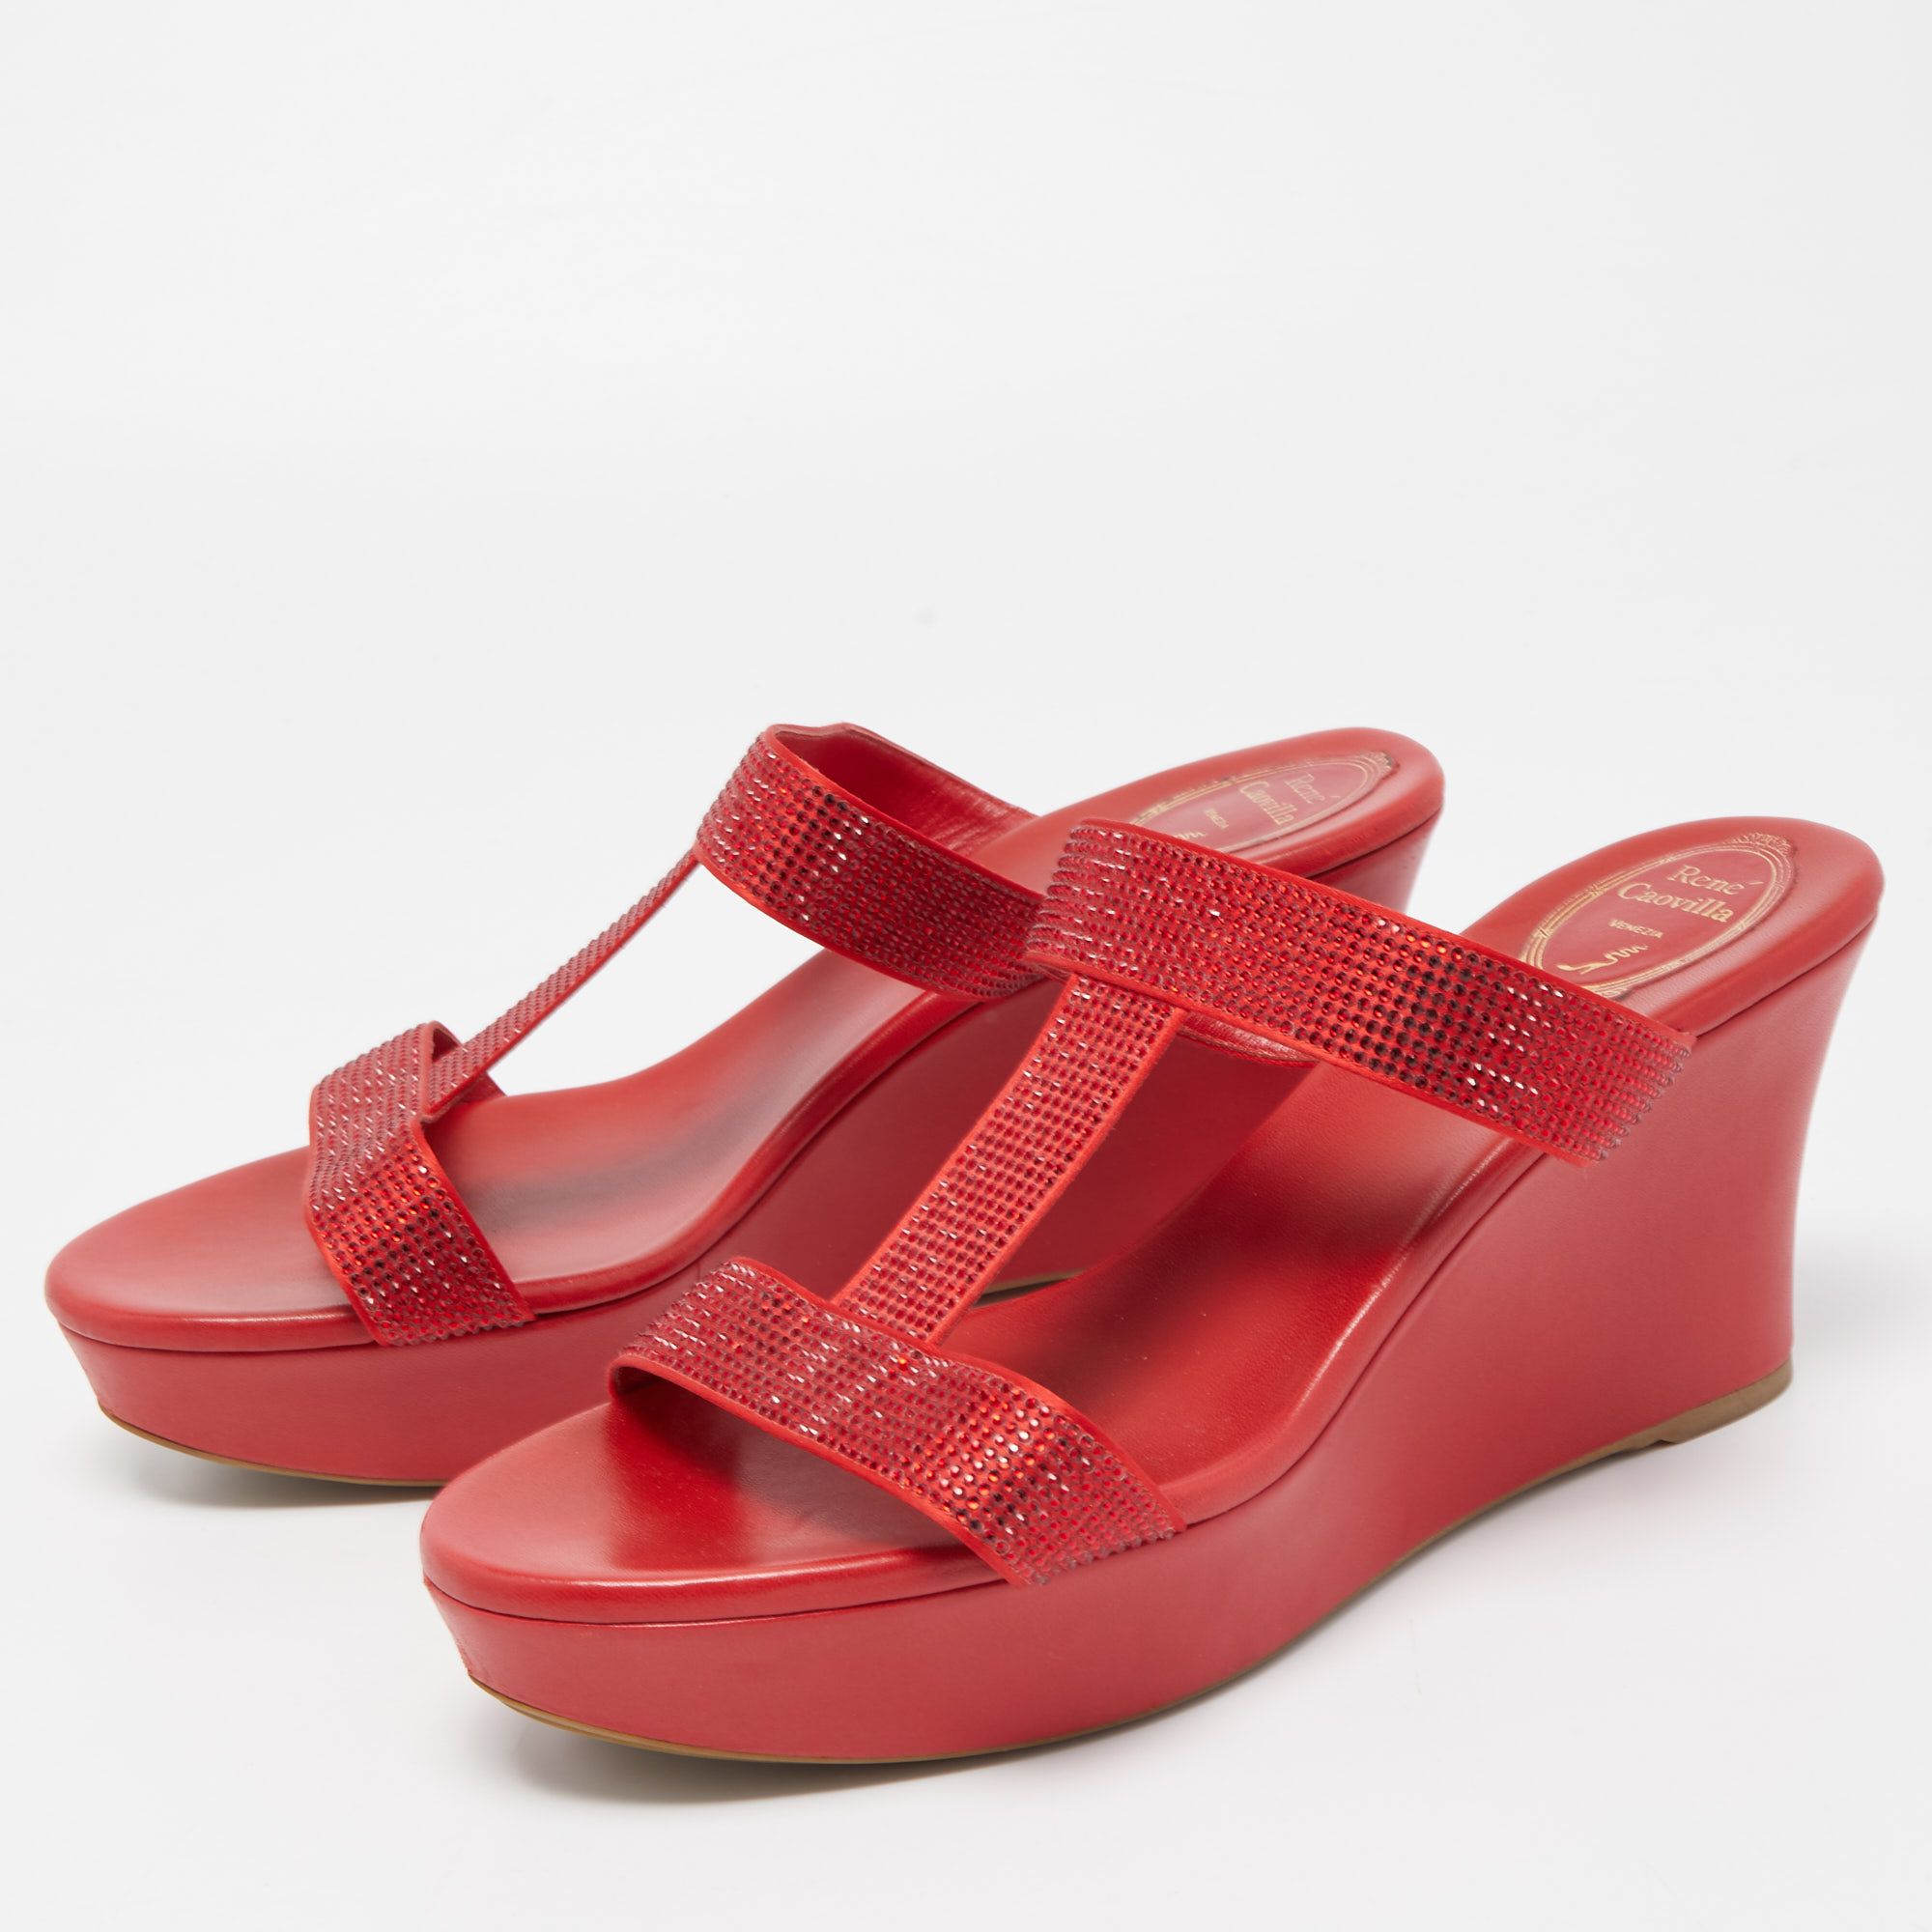 

René Caovilla Red Crystal Embellished Satin Wedge Platform Sandals Size